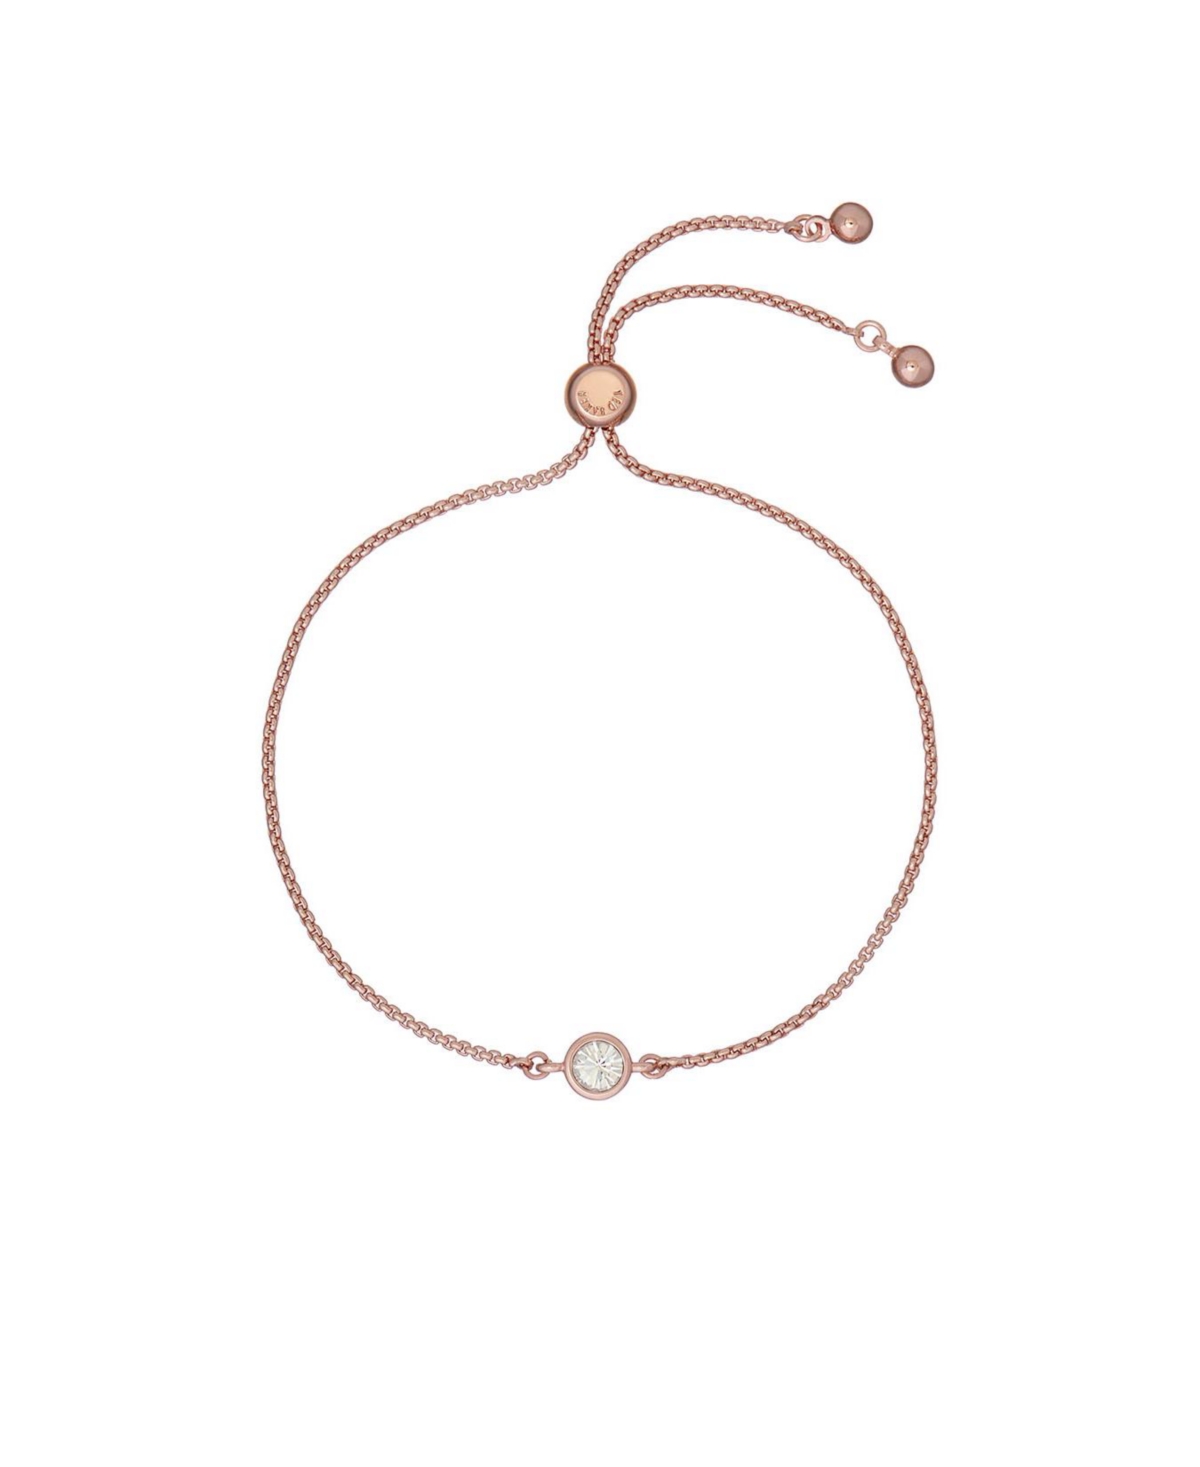 Sarsaa: Crystal Drawstring Adjustable Bracelet For Women - Gold